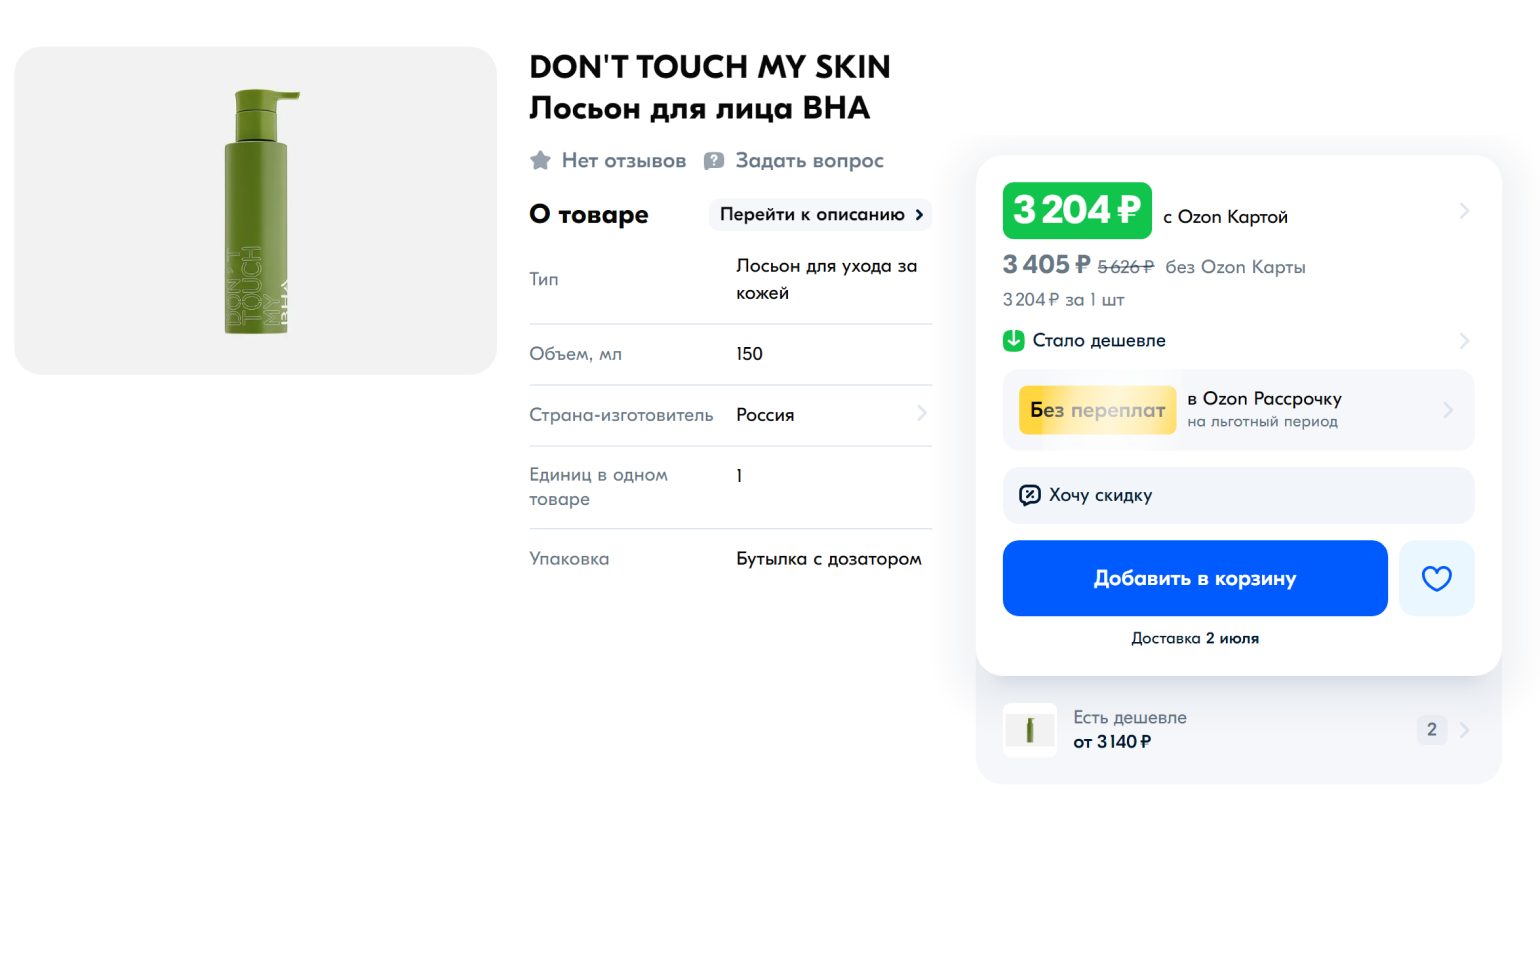 Стоимость лосьона Don’t Touch My Skin на «Озоне» — 4277 ₽, а на официальном сайте — 2290 ₽. На «Озоне» за такую цену может быть как подделка, так и перепродажа